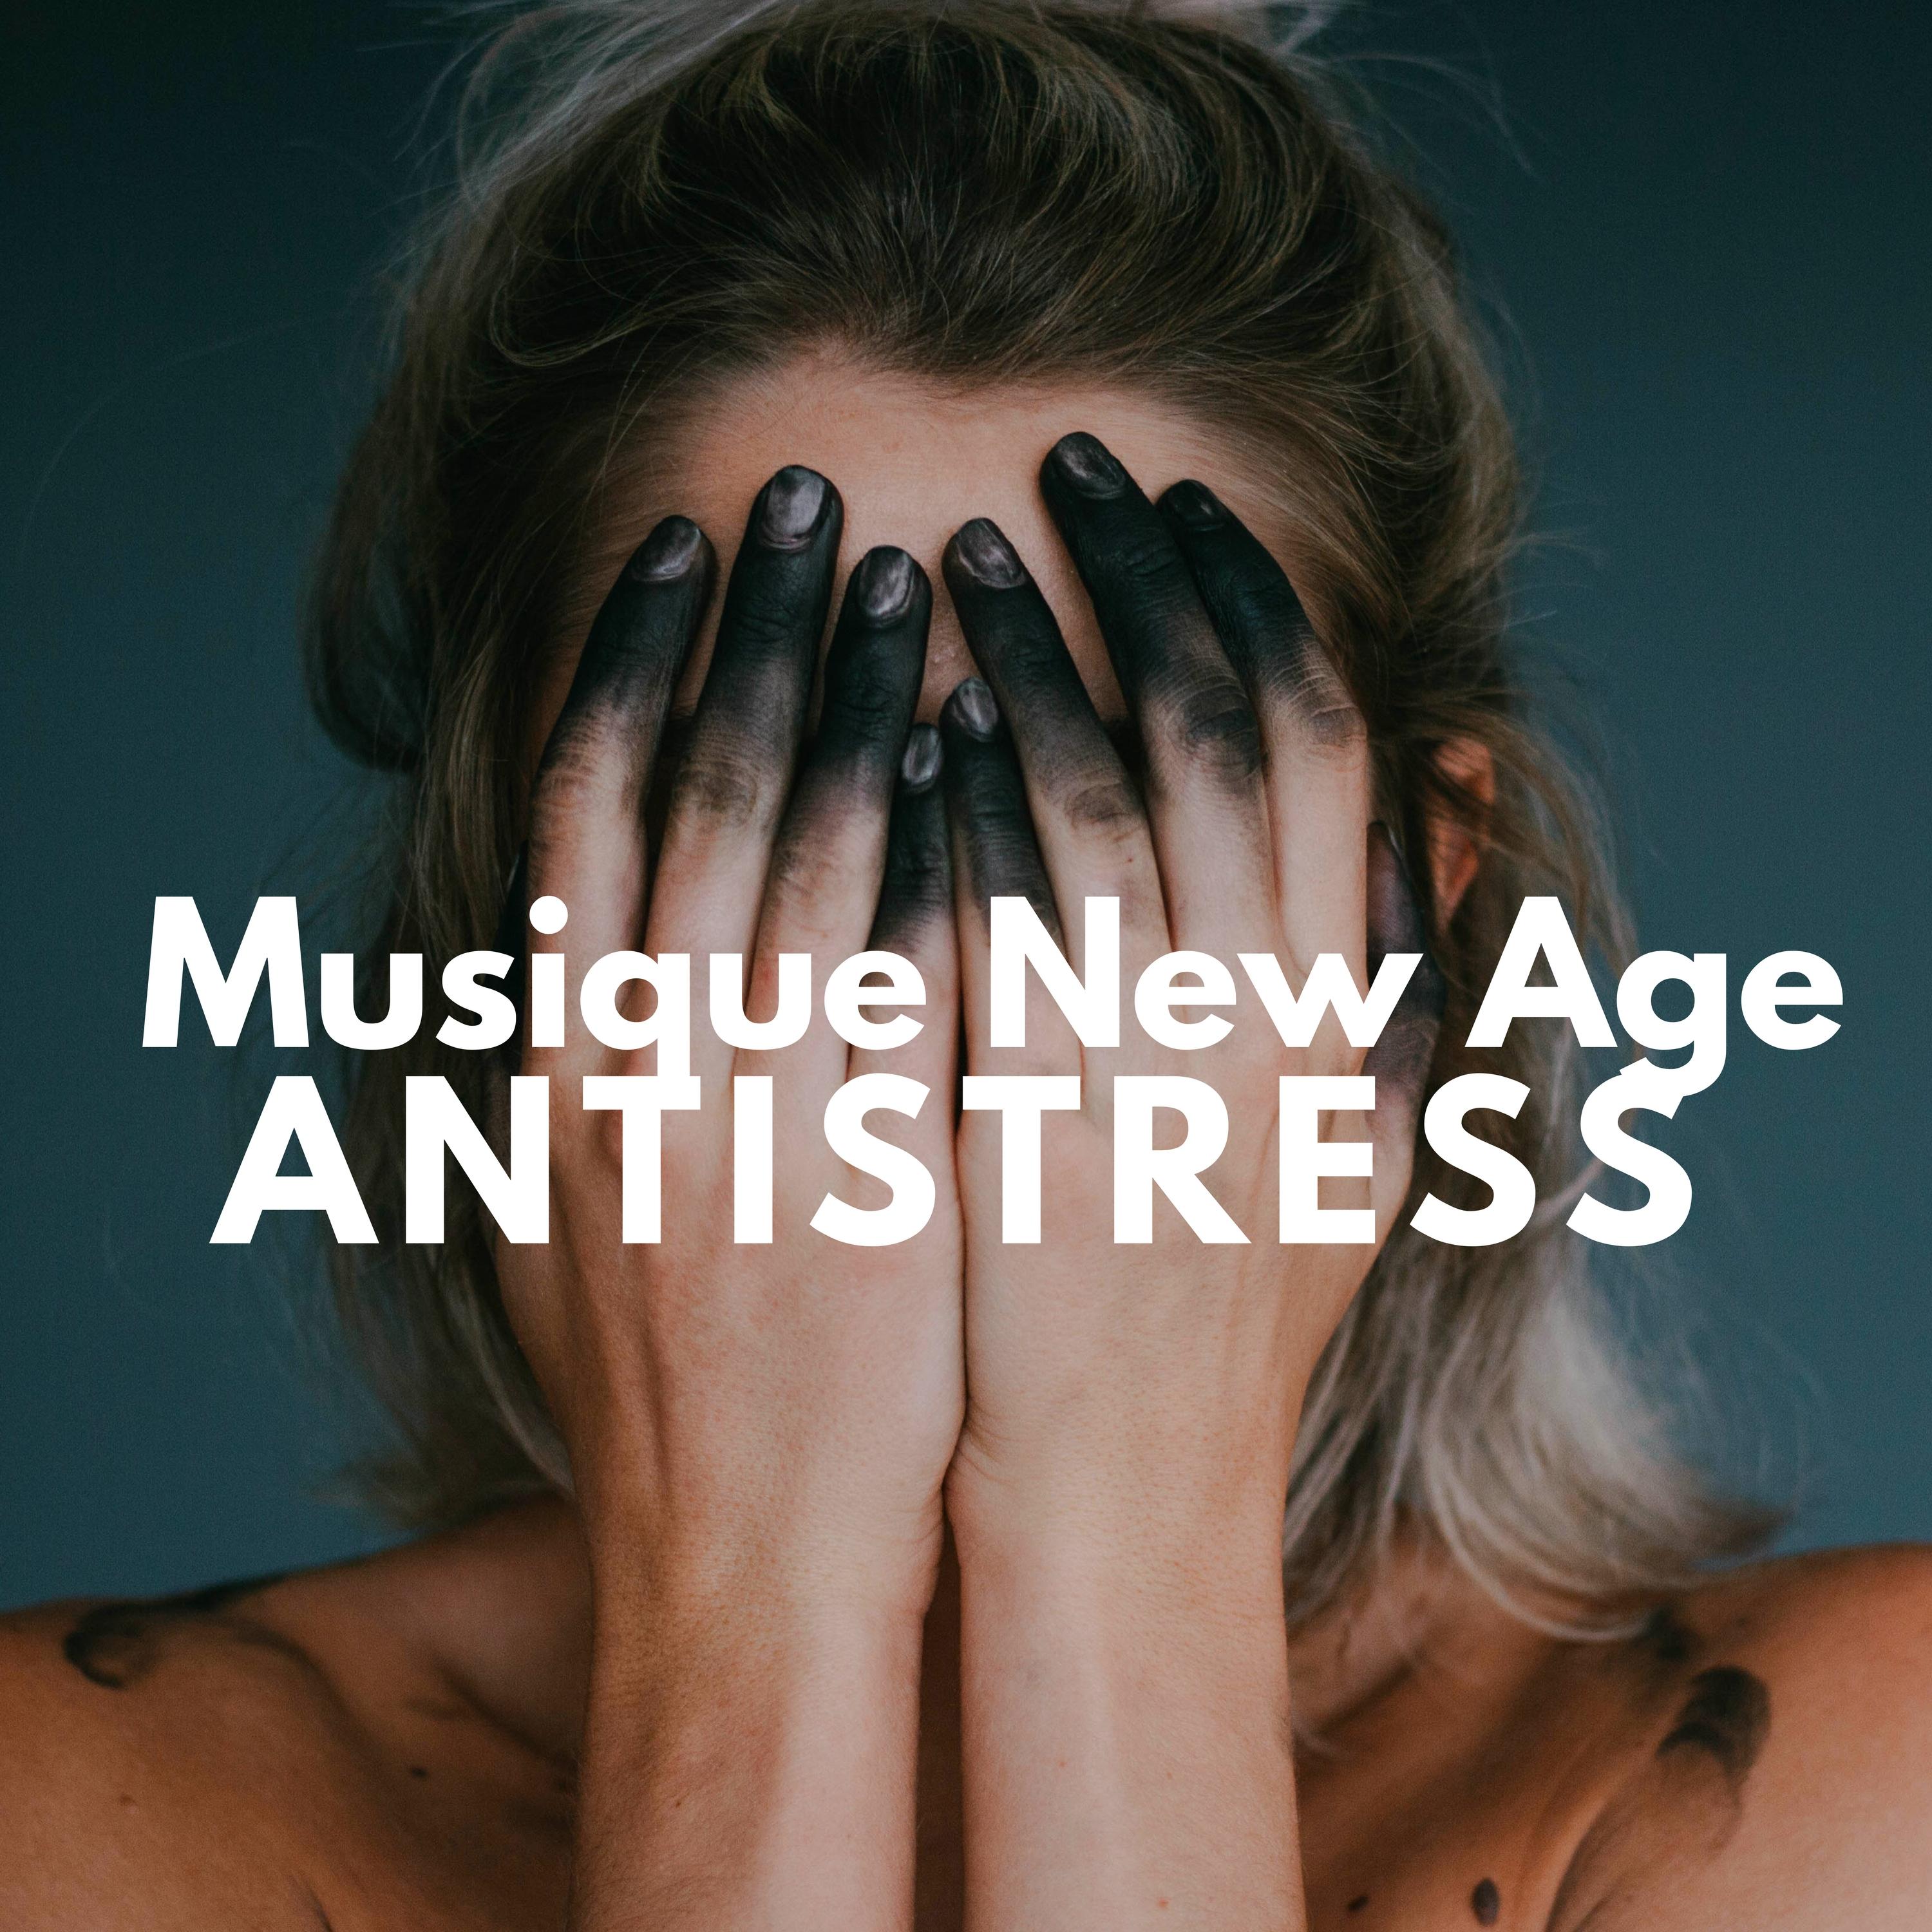 Musique New Age Antistress: Sons de la Nature et de la Musique Apaisante pour Me ditation, Pilates, Yoga, Reiki, Massage, Taichi, De tente, Bien tre